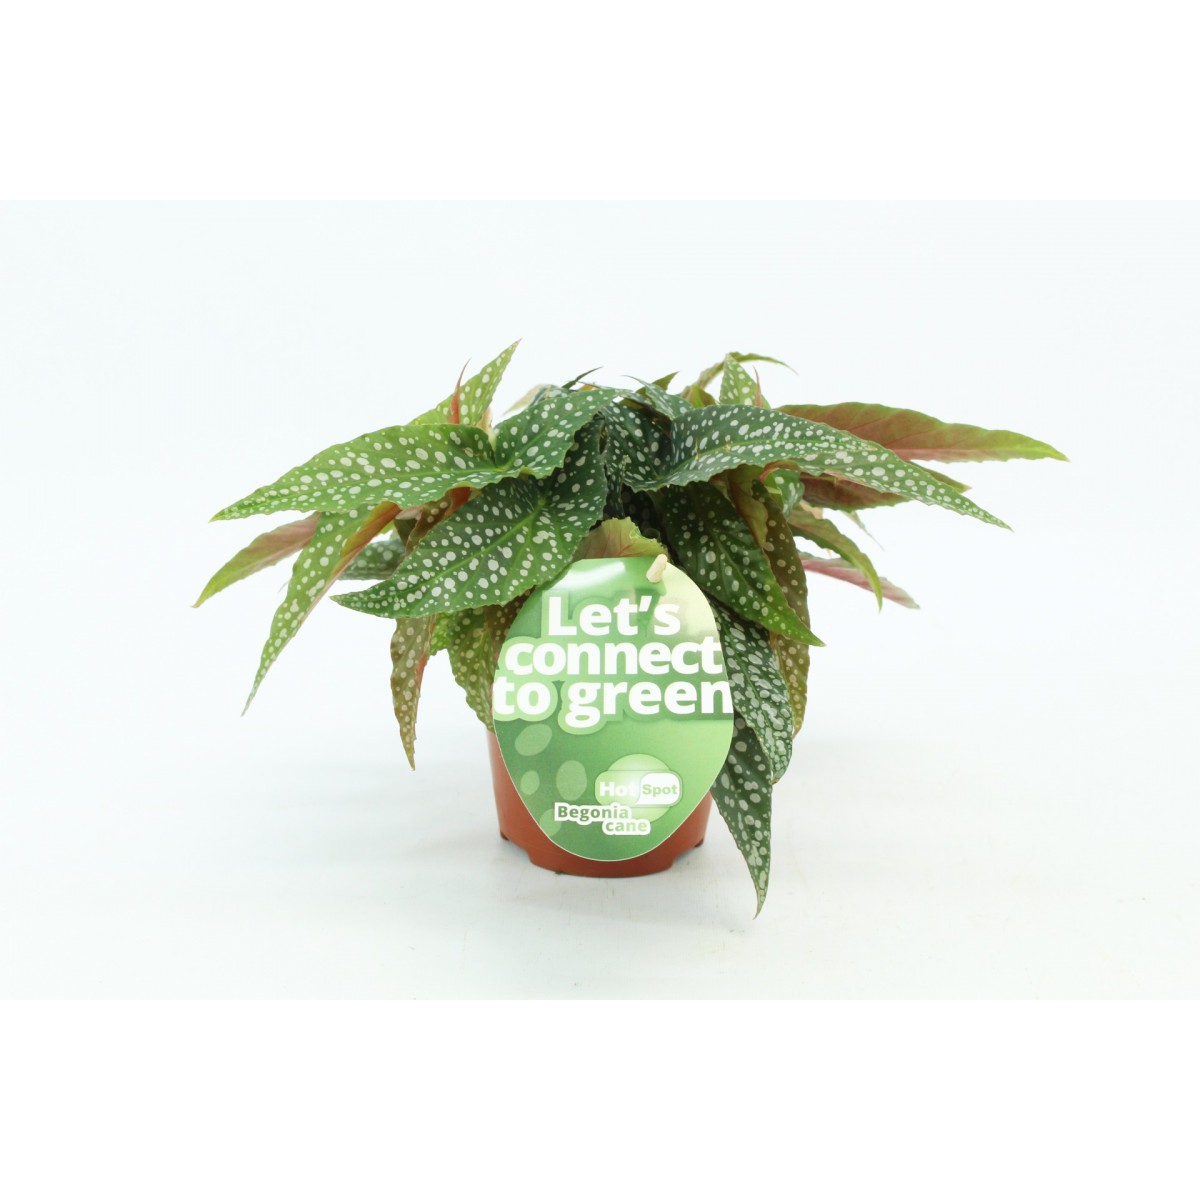   Begonia 'Hot spot'  Pot 12 cm